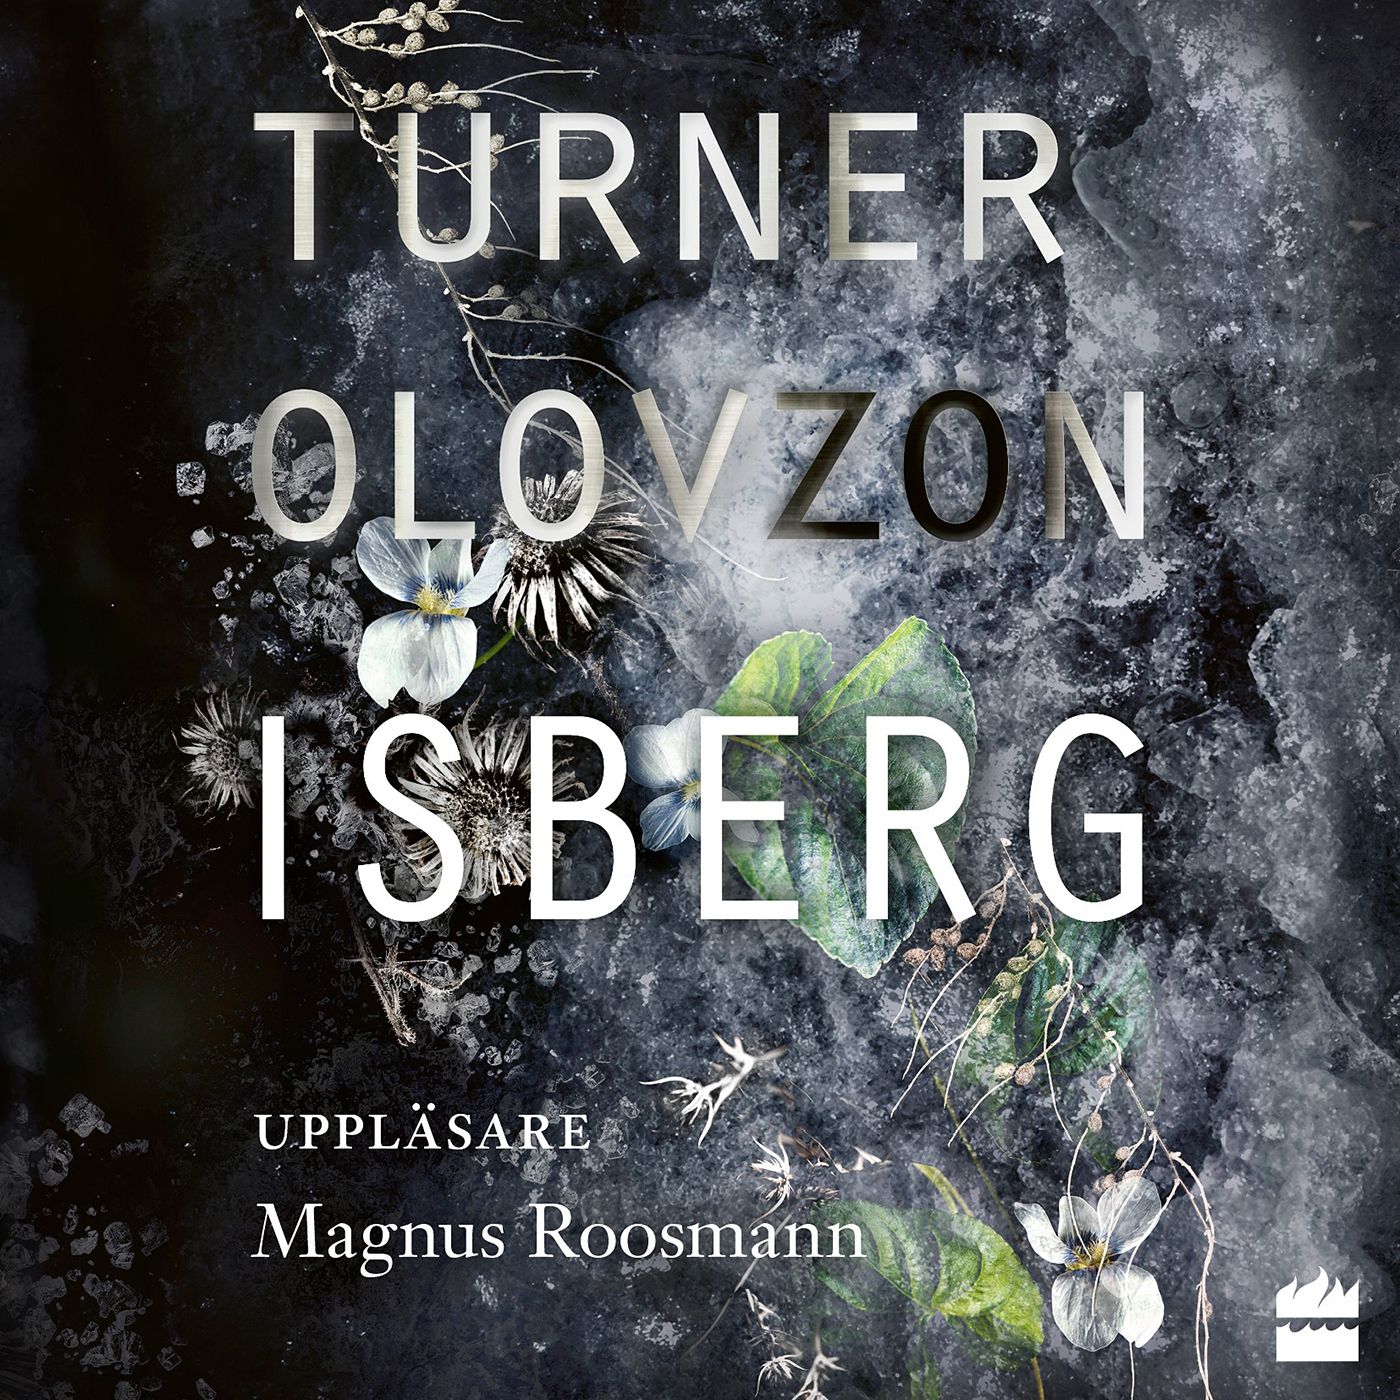 Isberg, ljudbok av Niklas Turner Olovzon